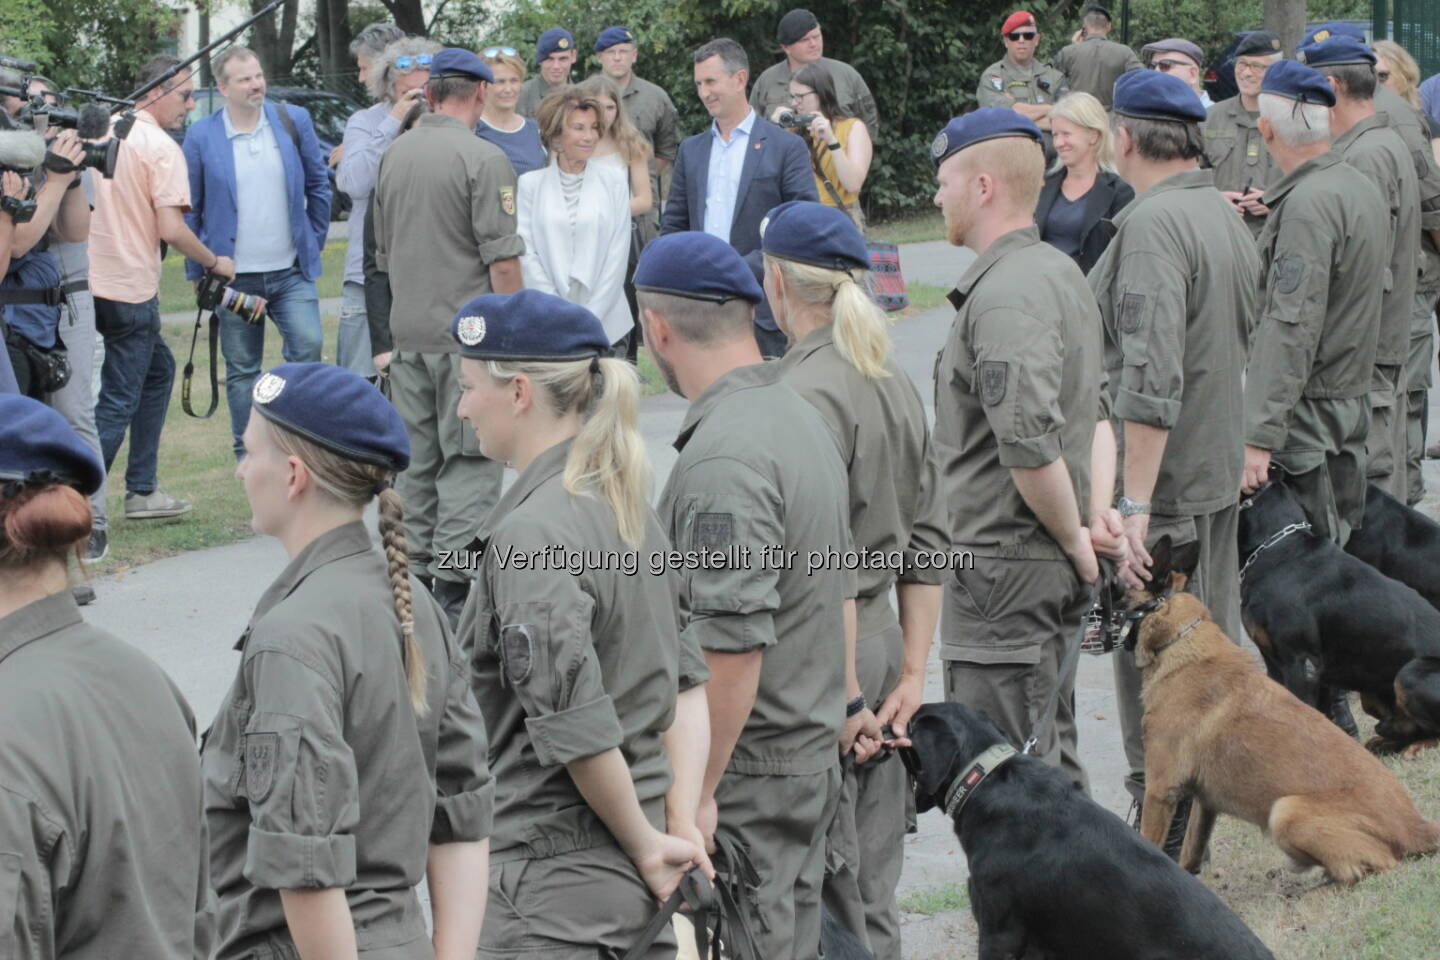 Bundeskanzlerin in Kaisersteinbruch, 29.7.19. Gut 50% der Hundeführer hier sind weiblich, schätze ich.